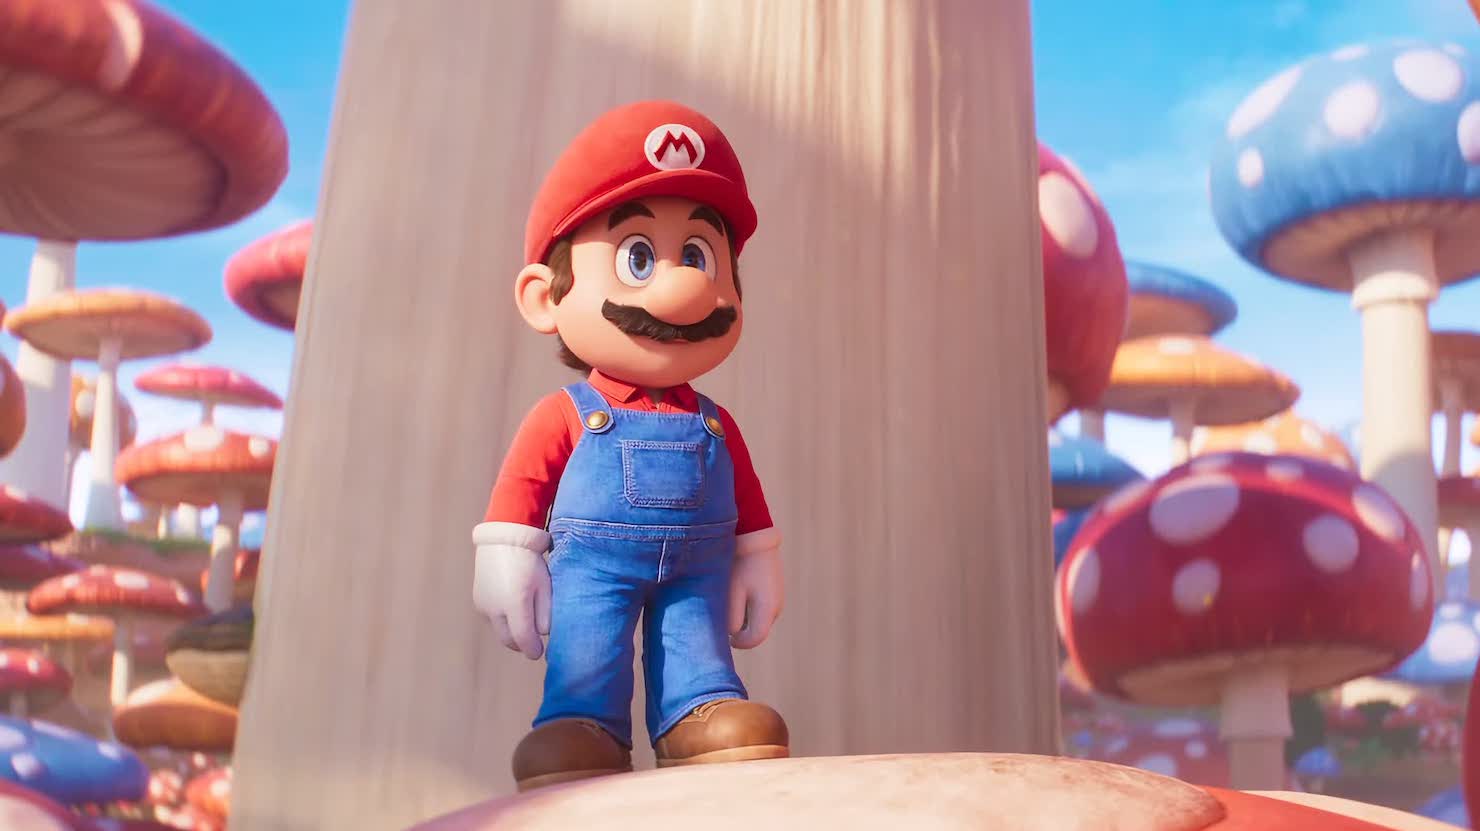 "Братья Супер Марио в кино" супербыстро выйдут на домашнем видео